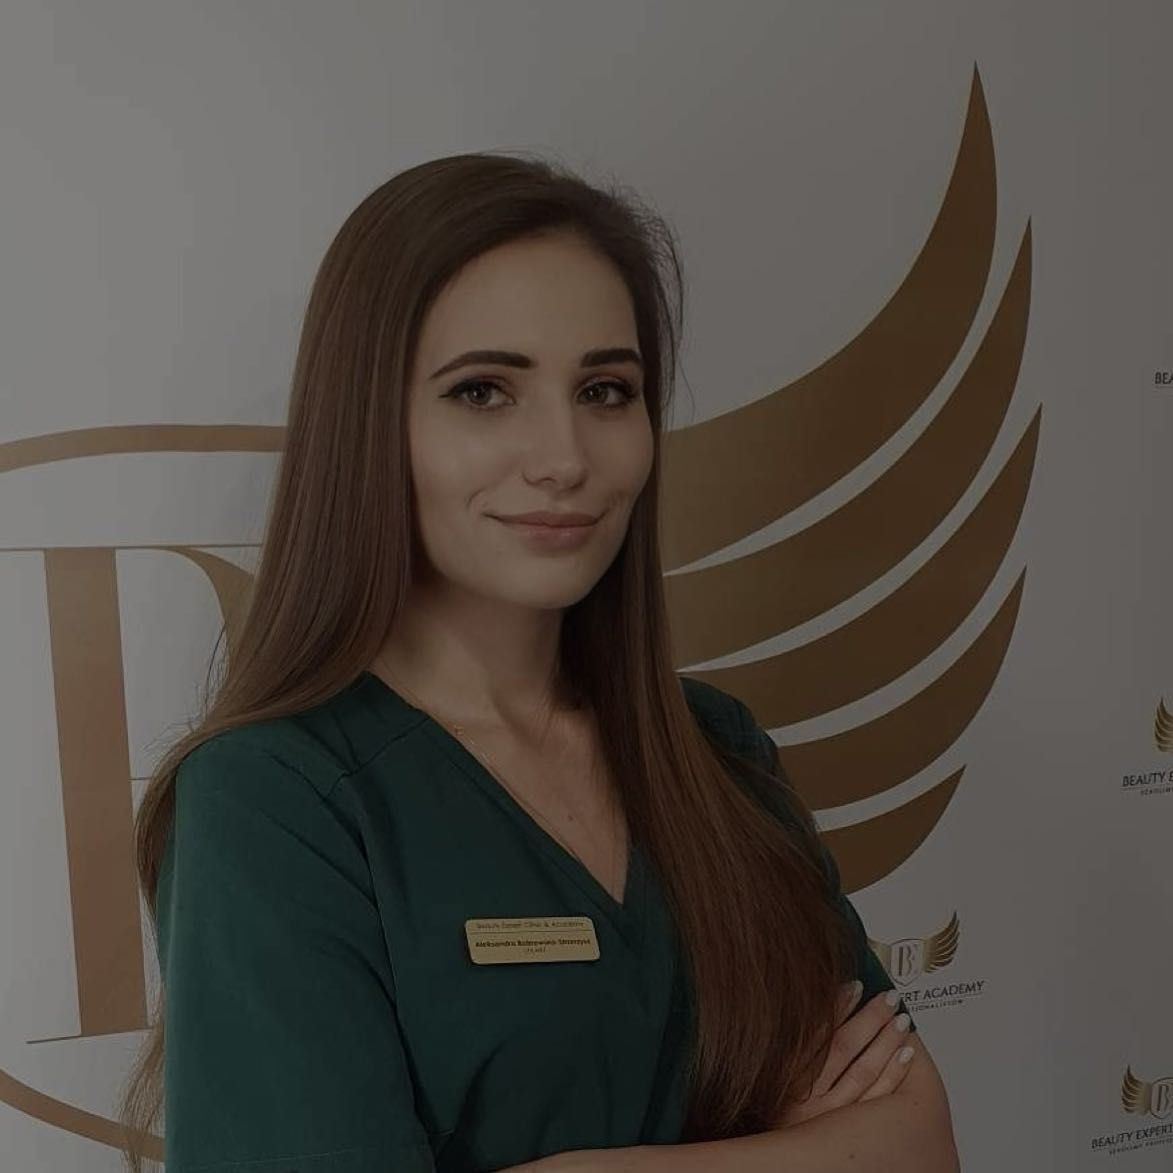 Dr Aleksandra Bobrowska Strzerzysz - Beauty Expert Academy/Icon Clinic